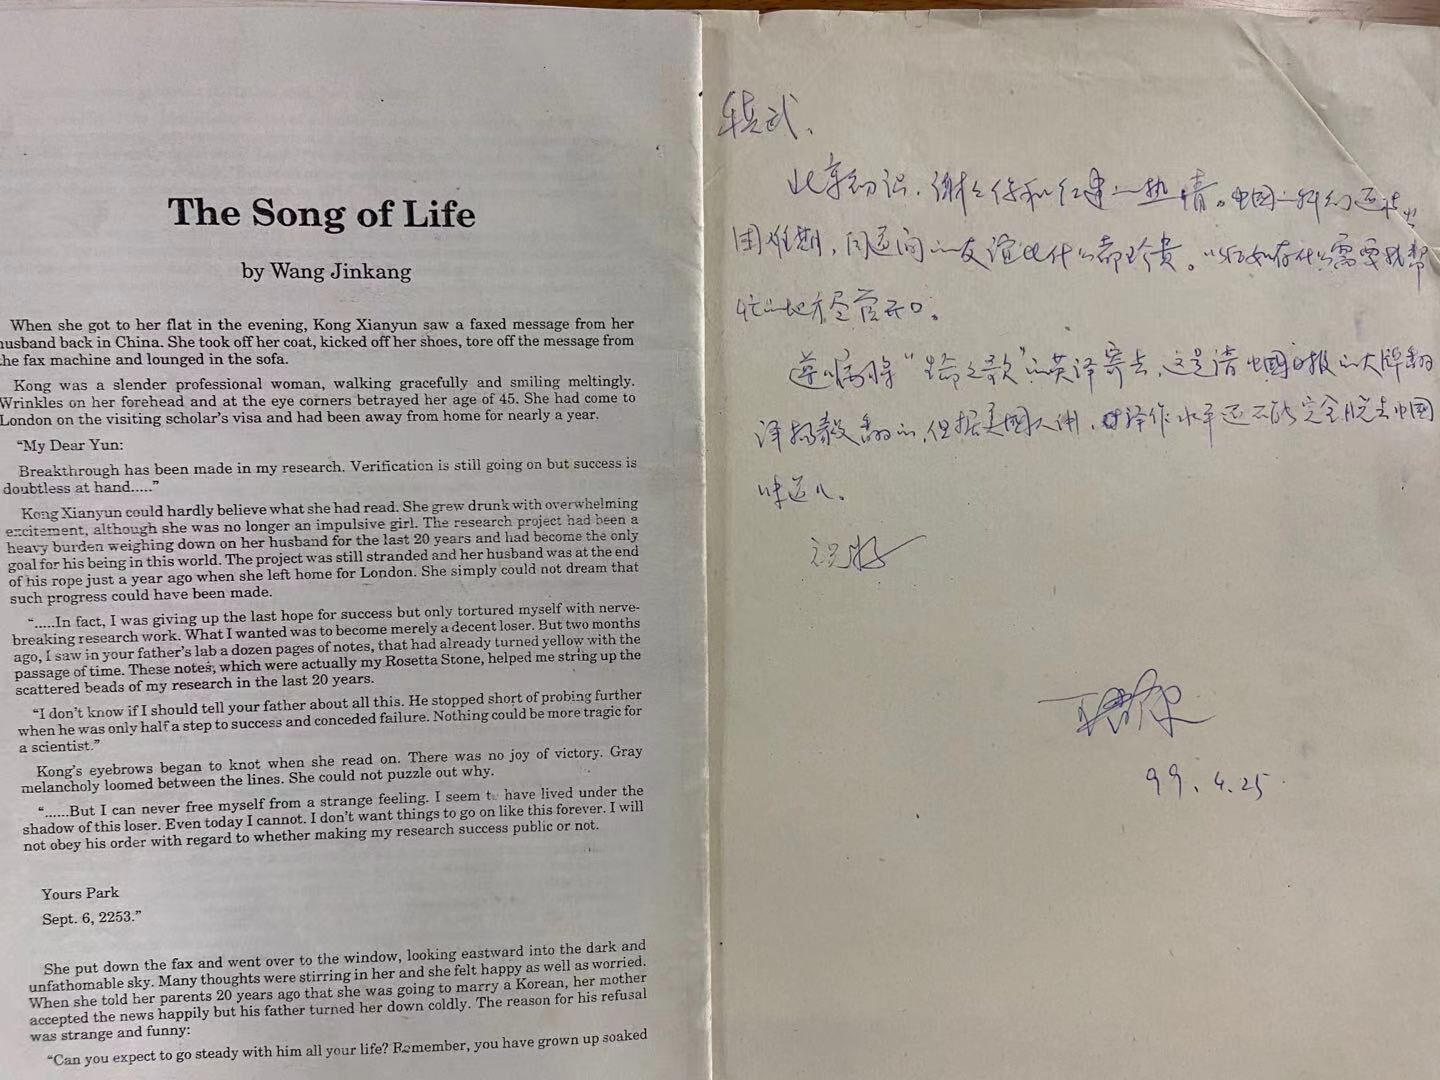 王晋康先生给书屋的资料，生命之歌的英译版